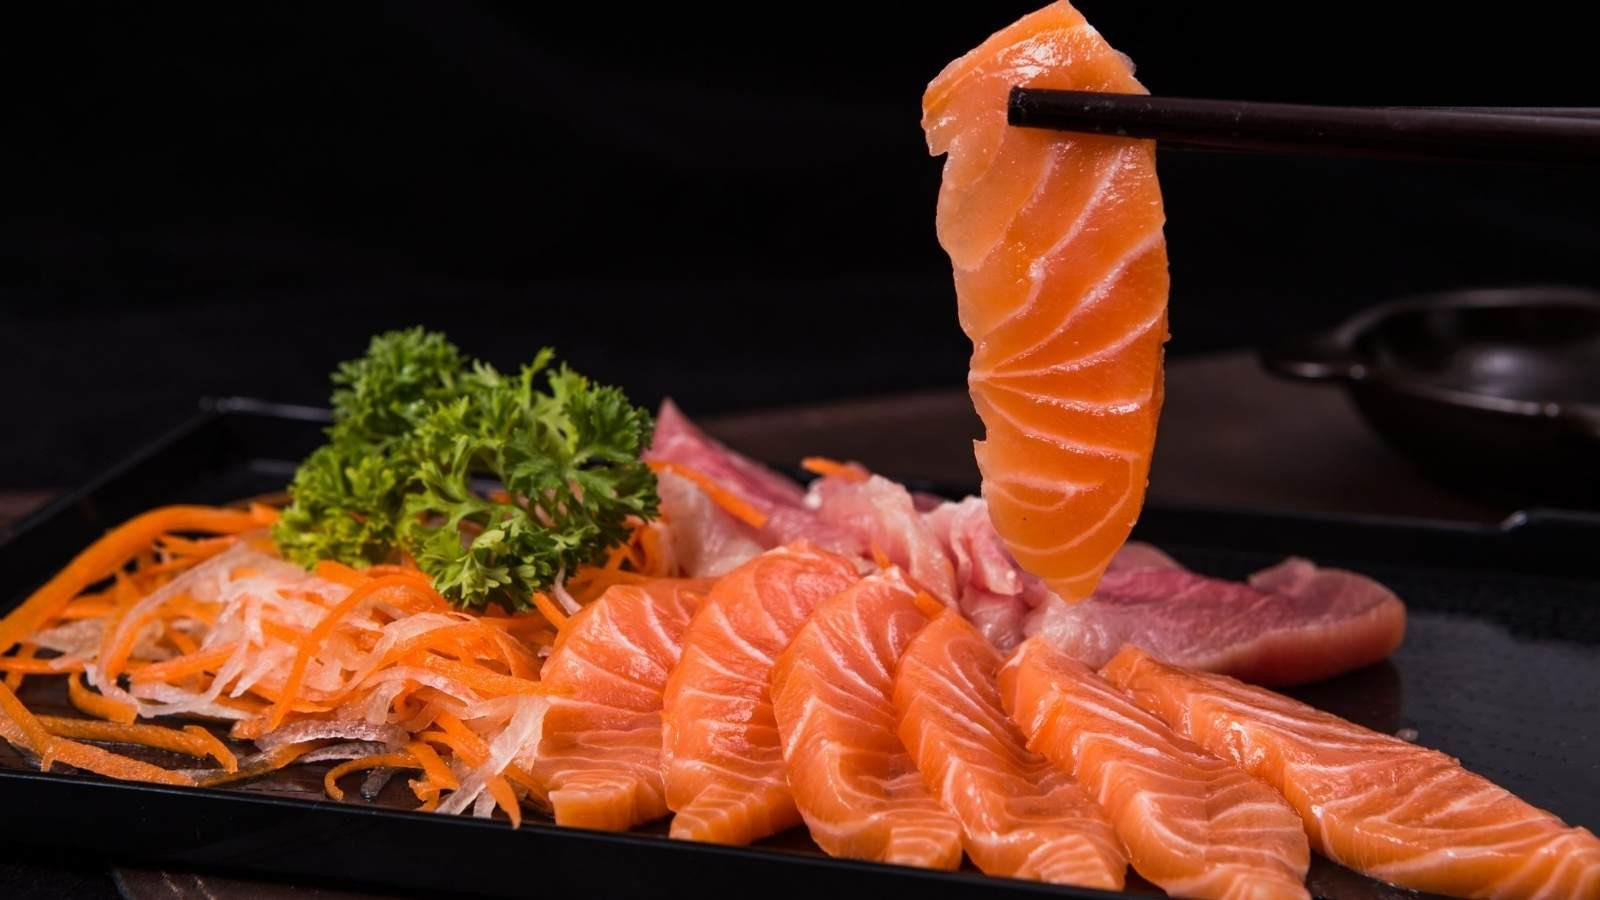 Chuyên gia dinh dưỡng chỉ nguy cơ tiềm ẩn trong đĩa sashimi hấp dẫn - 1